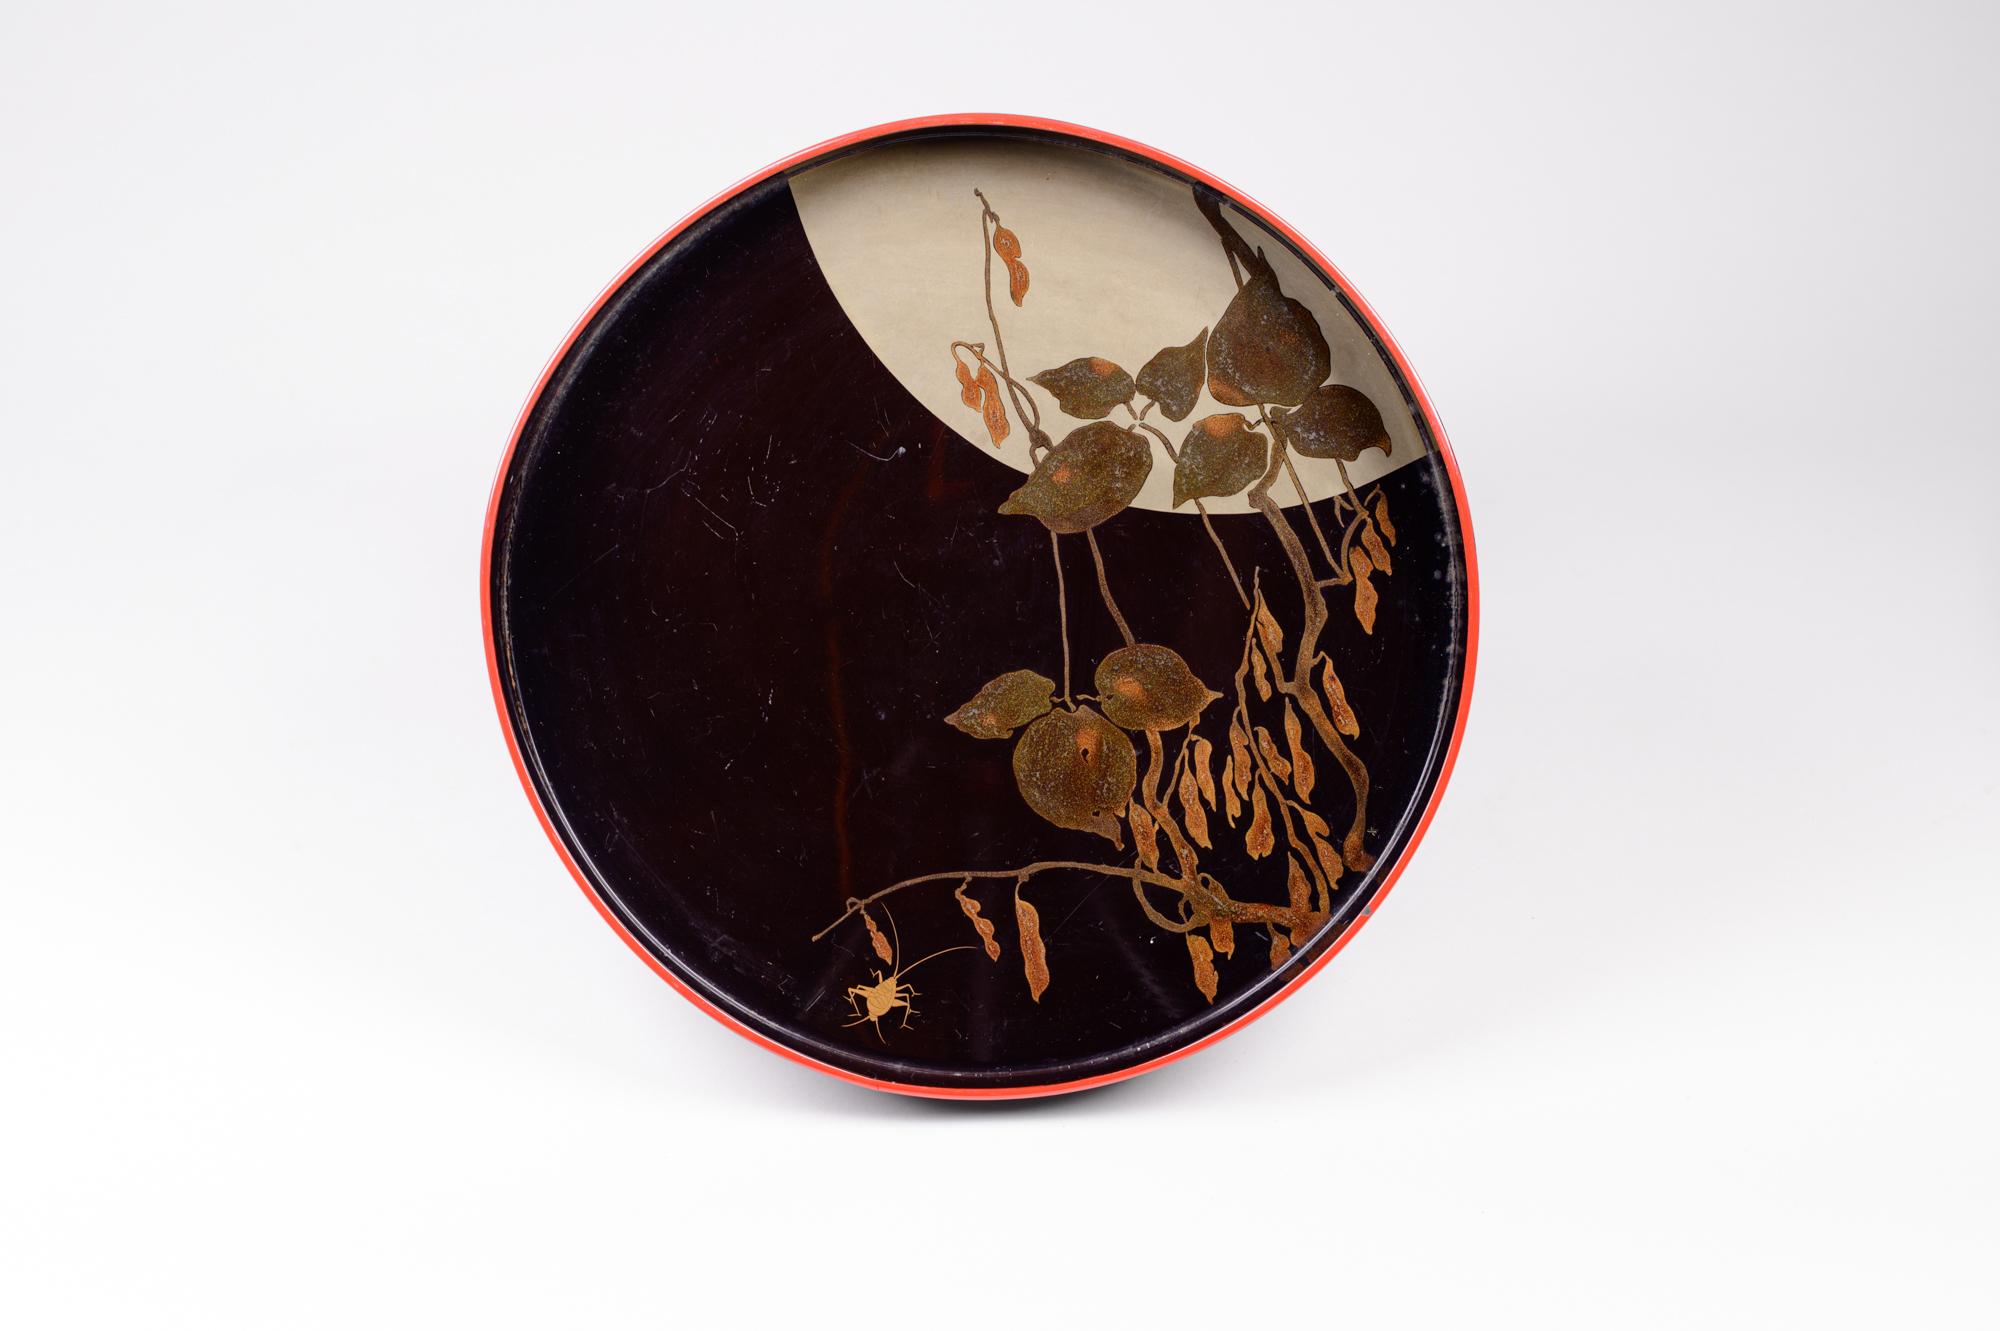 Zwei antike japanische Lacktabletts aus der Taisho-Periode (1912-1926), schön verziert mit einer Miniaturlandschaft mit Erbsenschoten an einer Weinrebe und einer goldenen Grille vor einem großen silbernen Vollmond. Schöner Einsatz des Maßstabs in